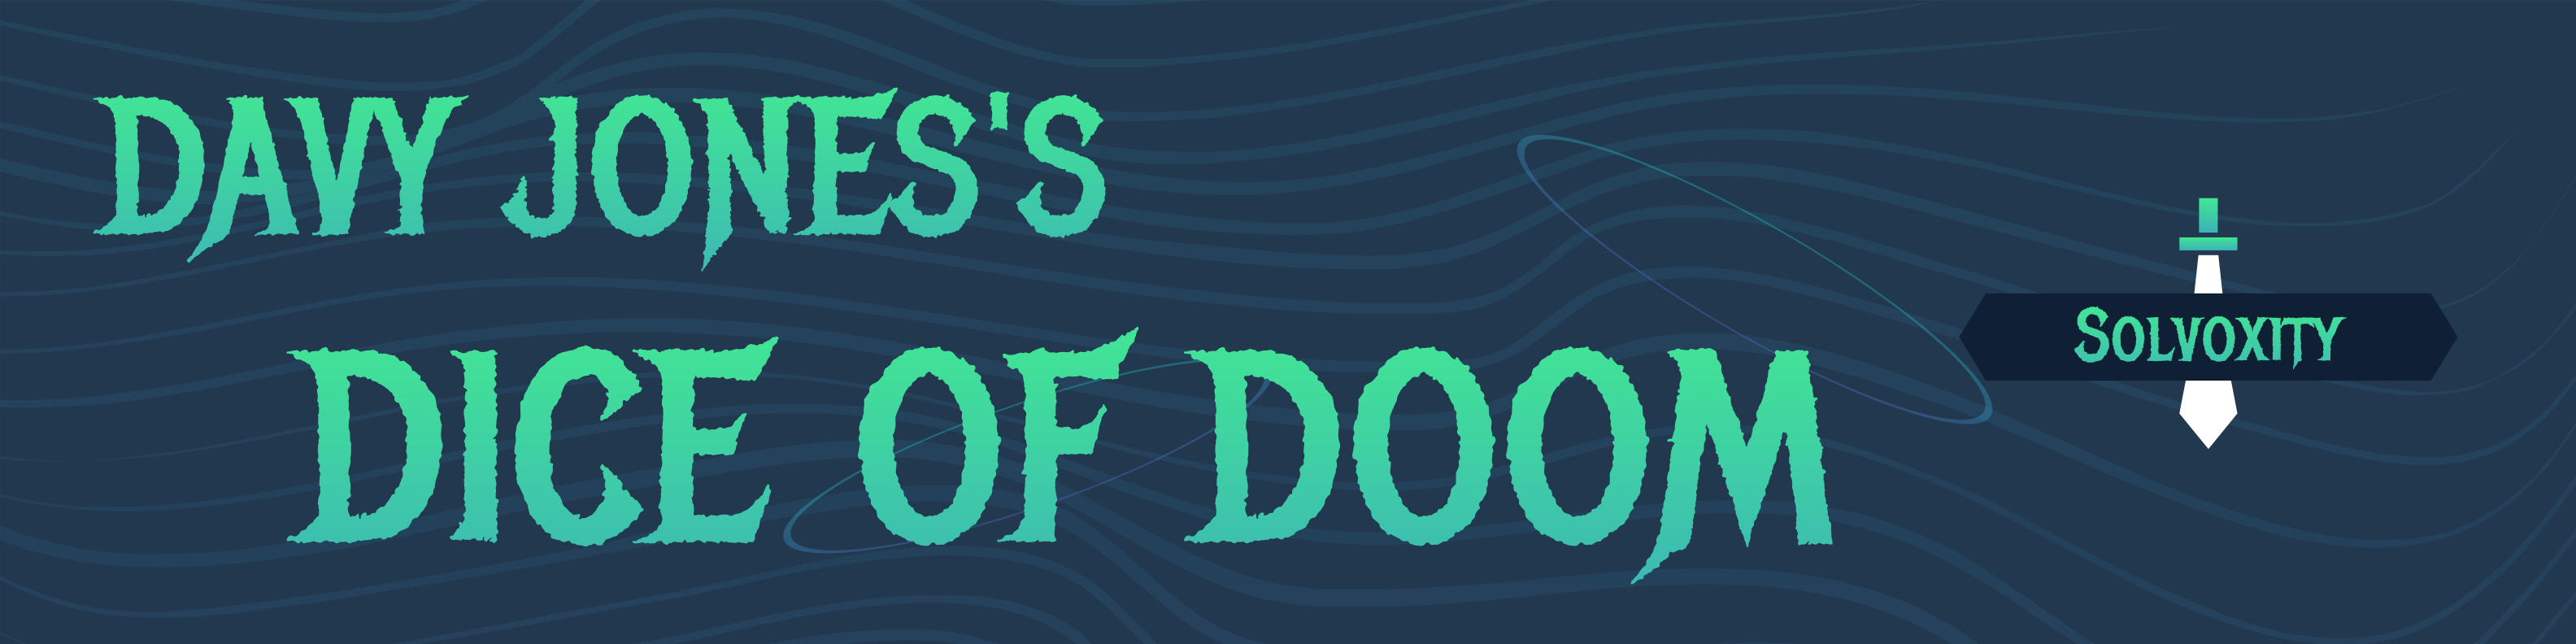 Davy Jones's Dice of Doom